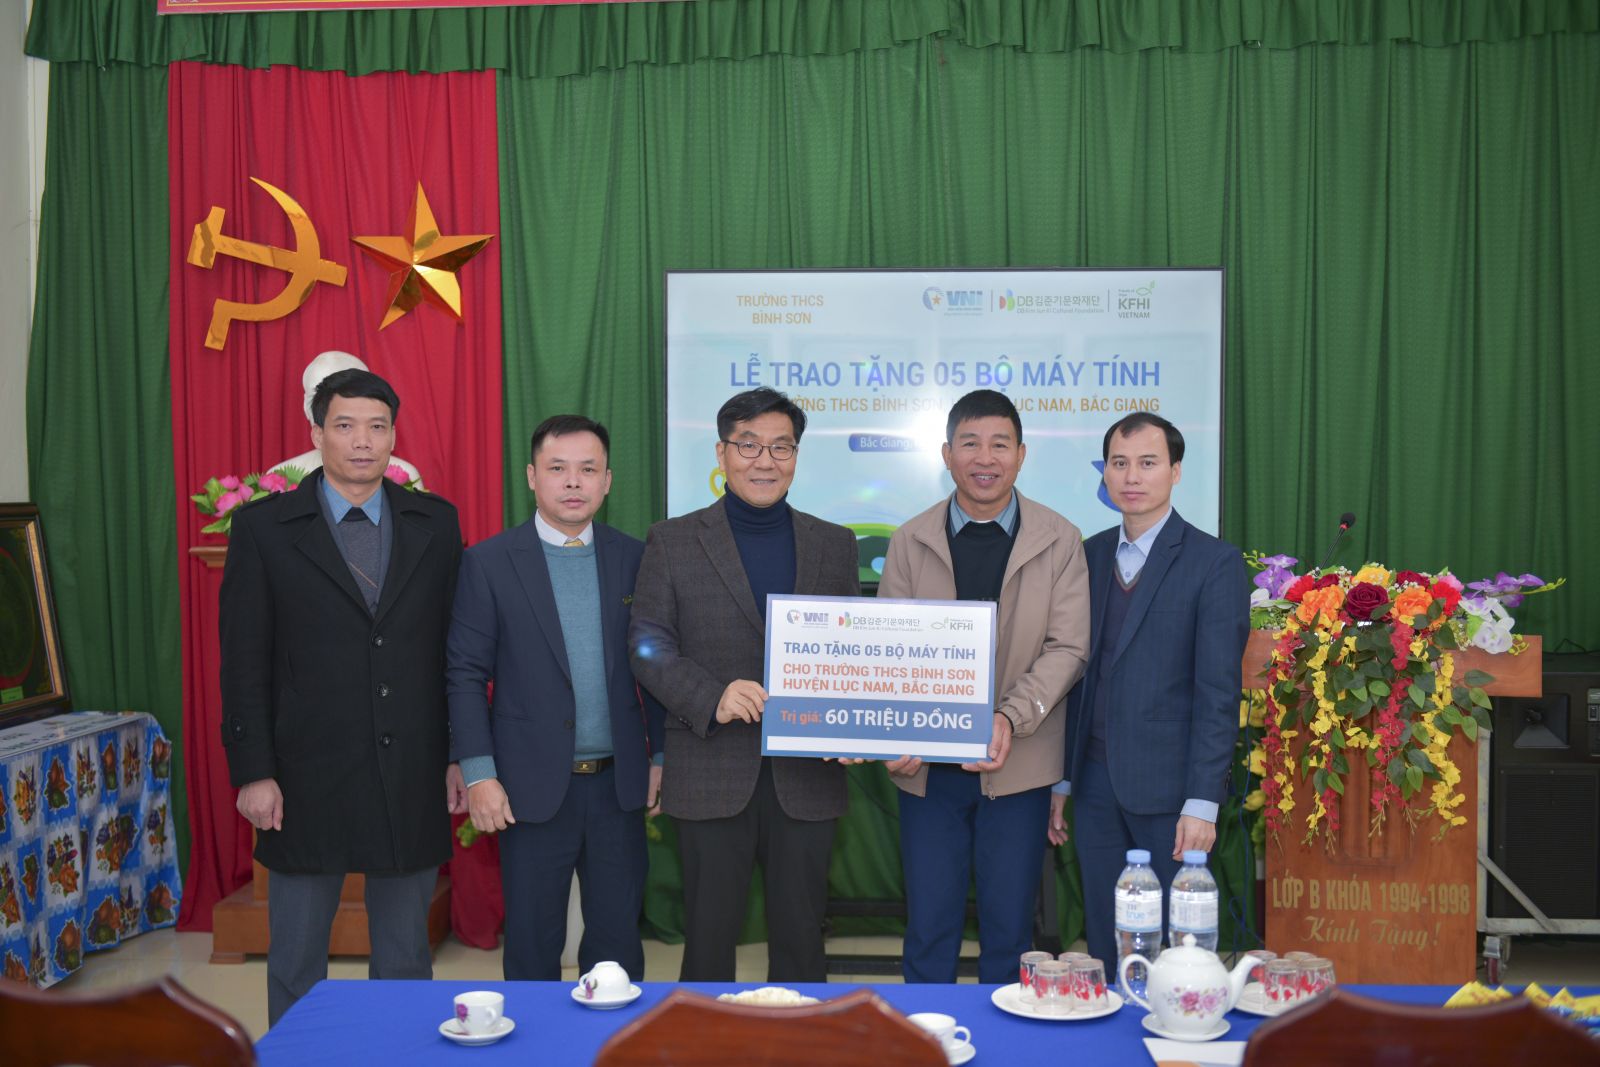 Đại diện VNI và Tổ chức KFHI trao 05 bộ máy tính cho trường THCS Bình Sơn, huyện Lục Nam, tỉnh Bắc Giang